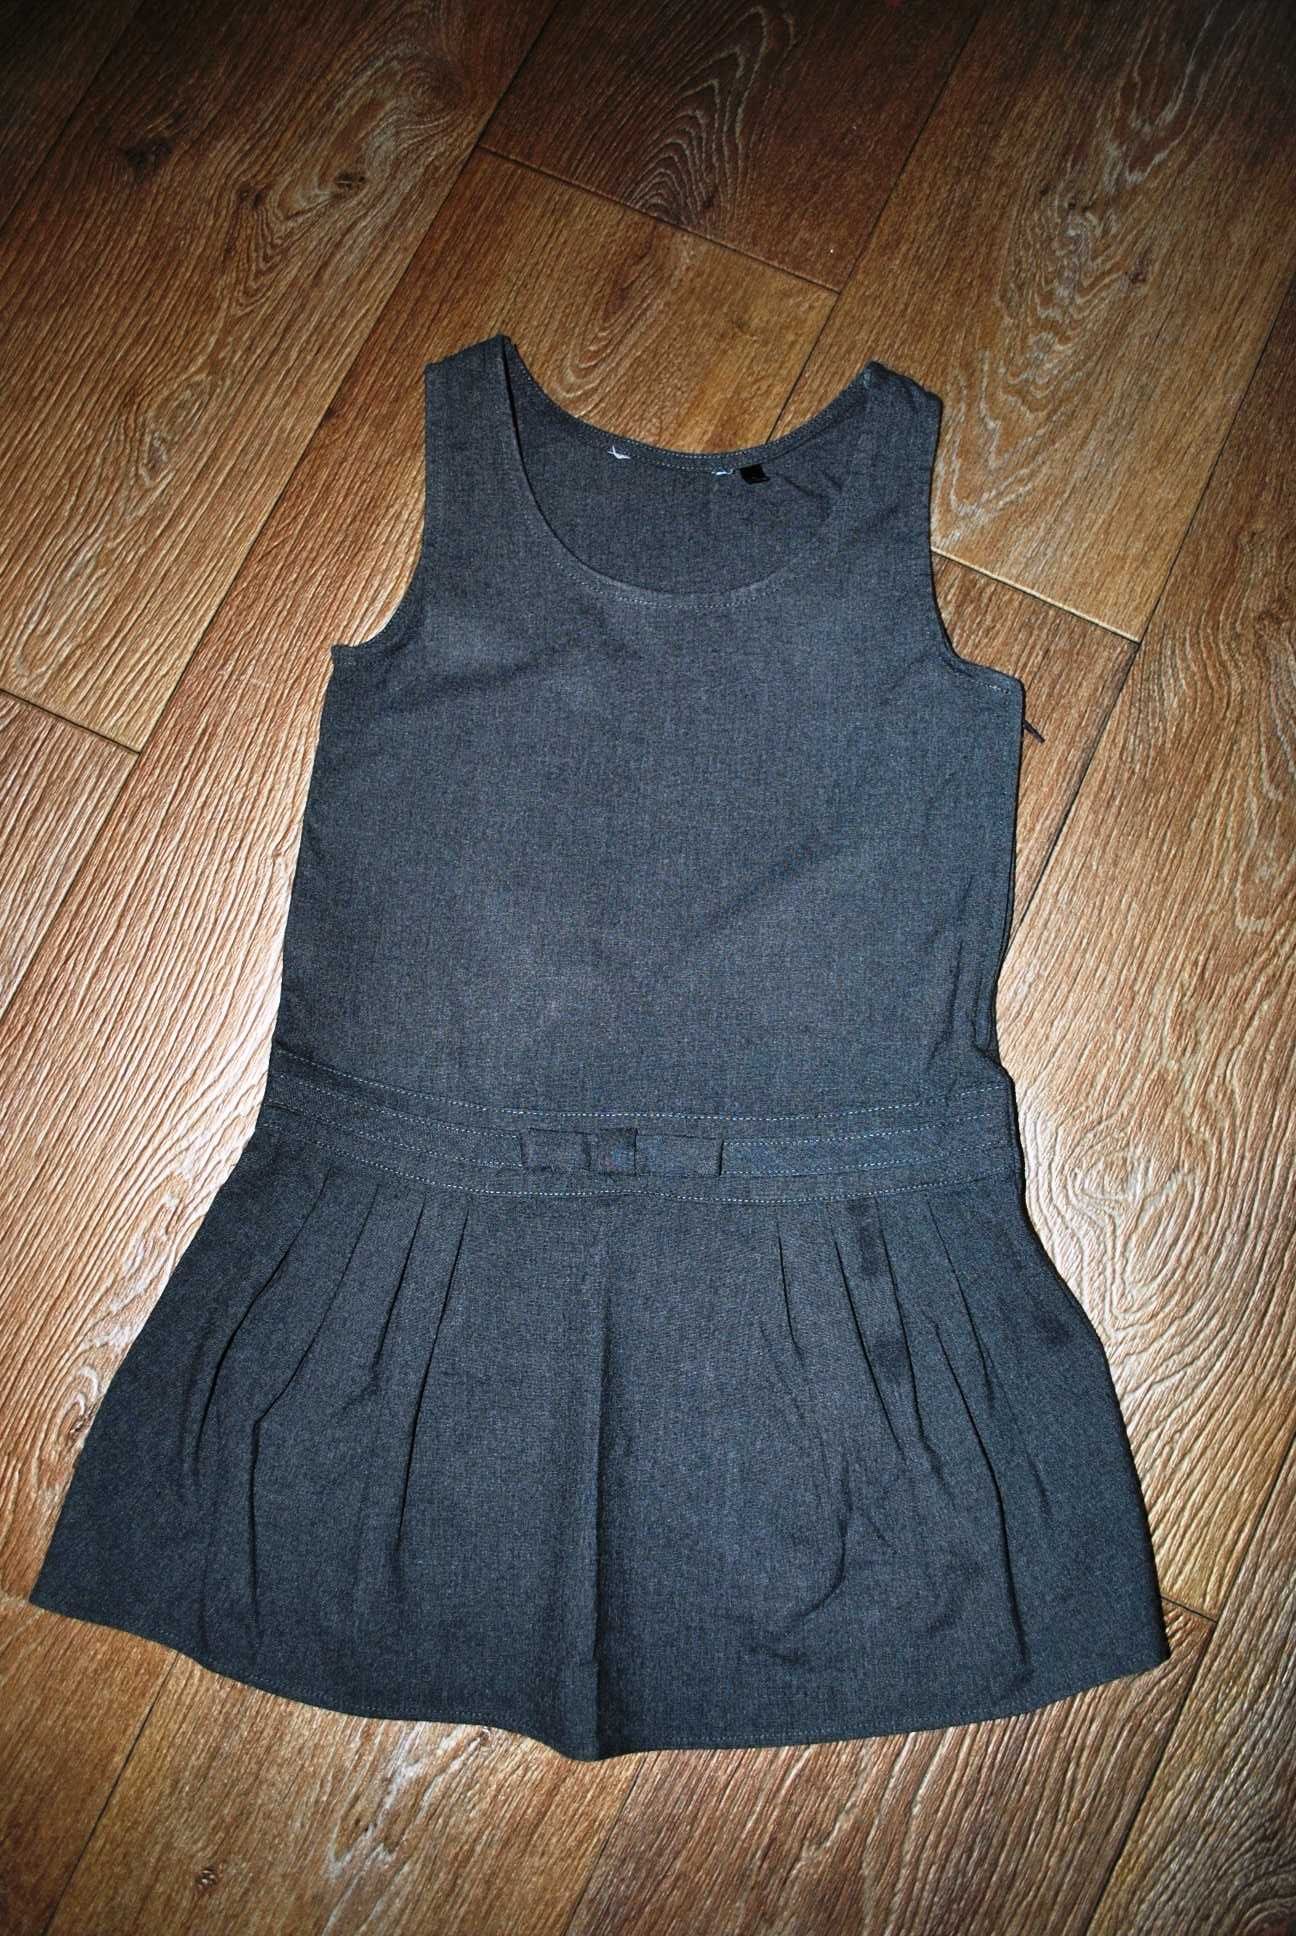 Платье 6-7 лет сарафан на девочку школьный повседневный серый